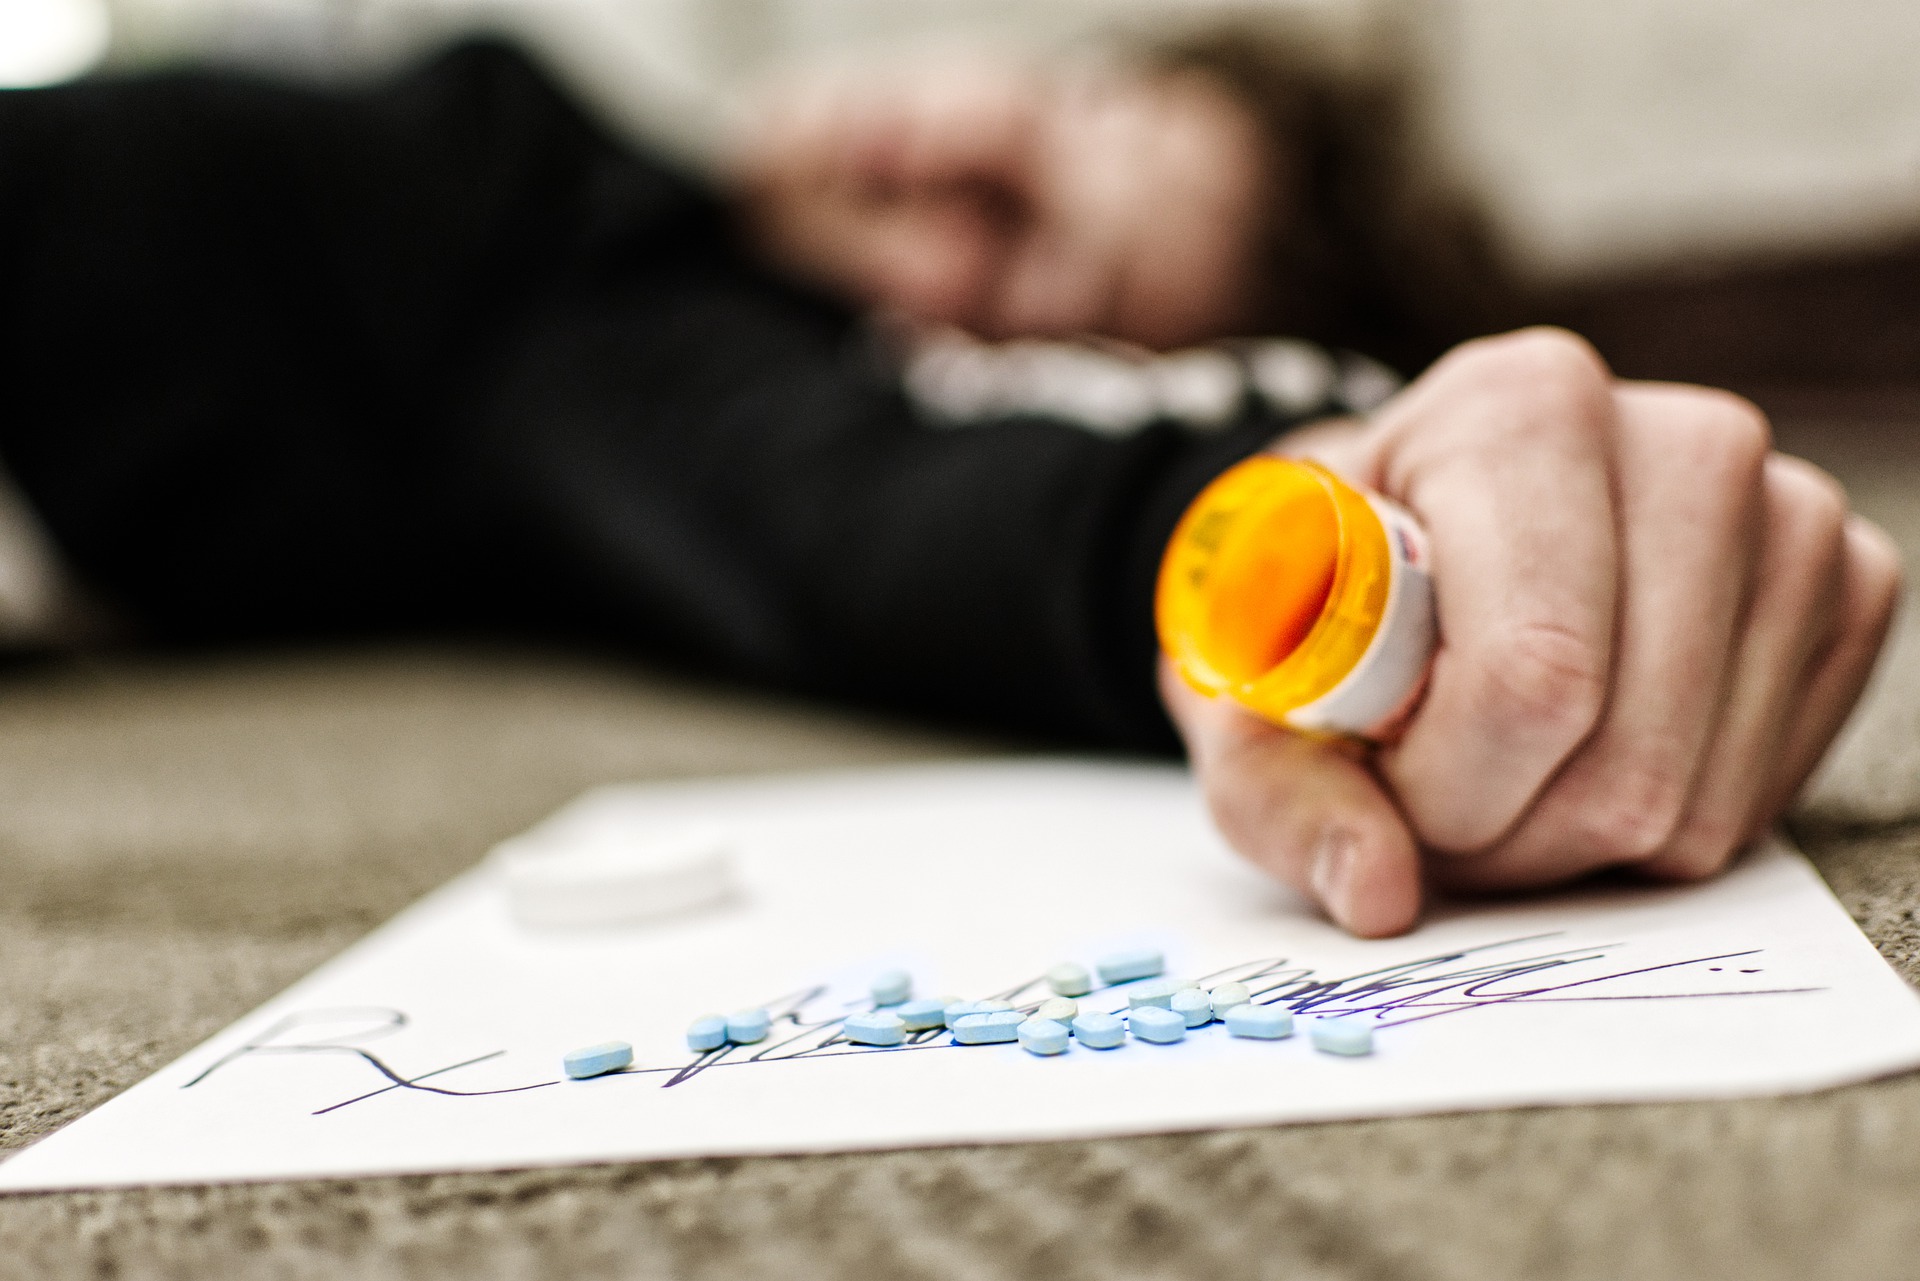 increase in drug overdoses